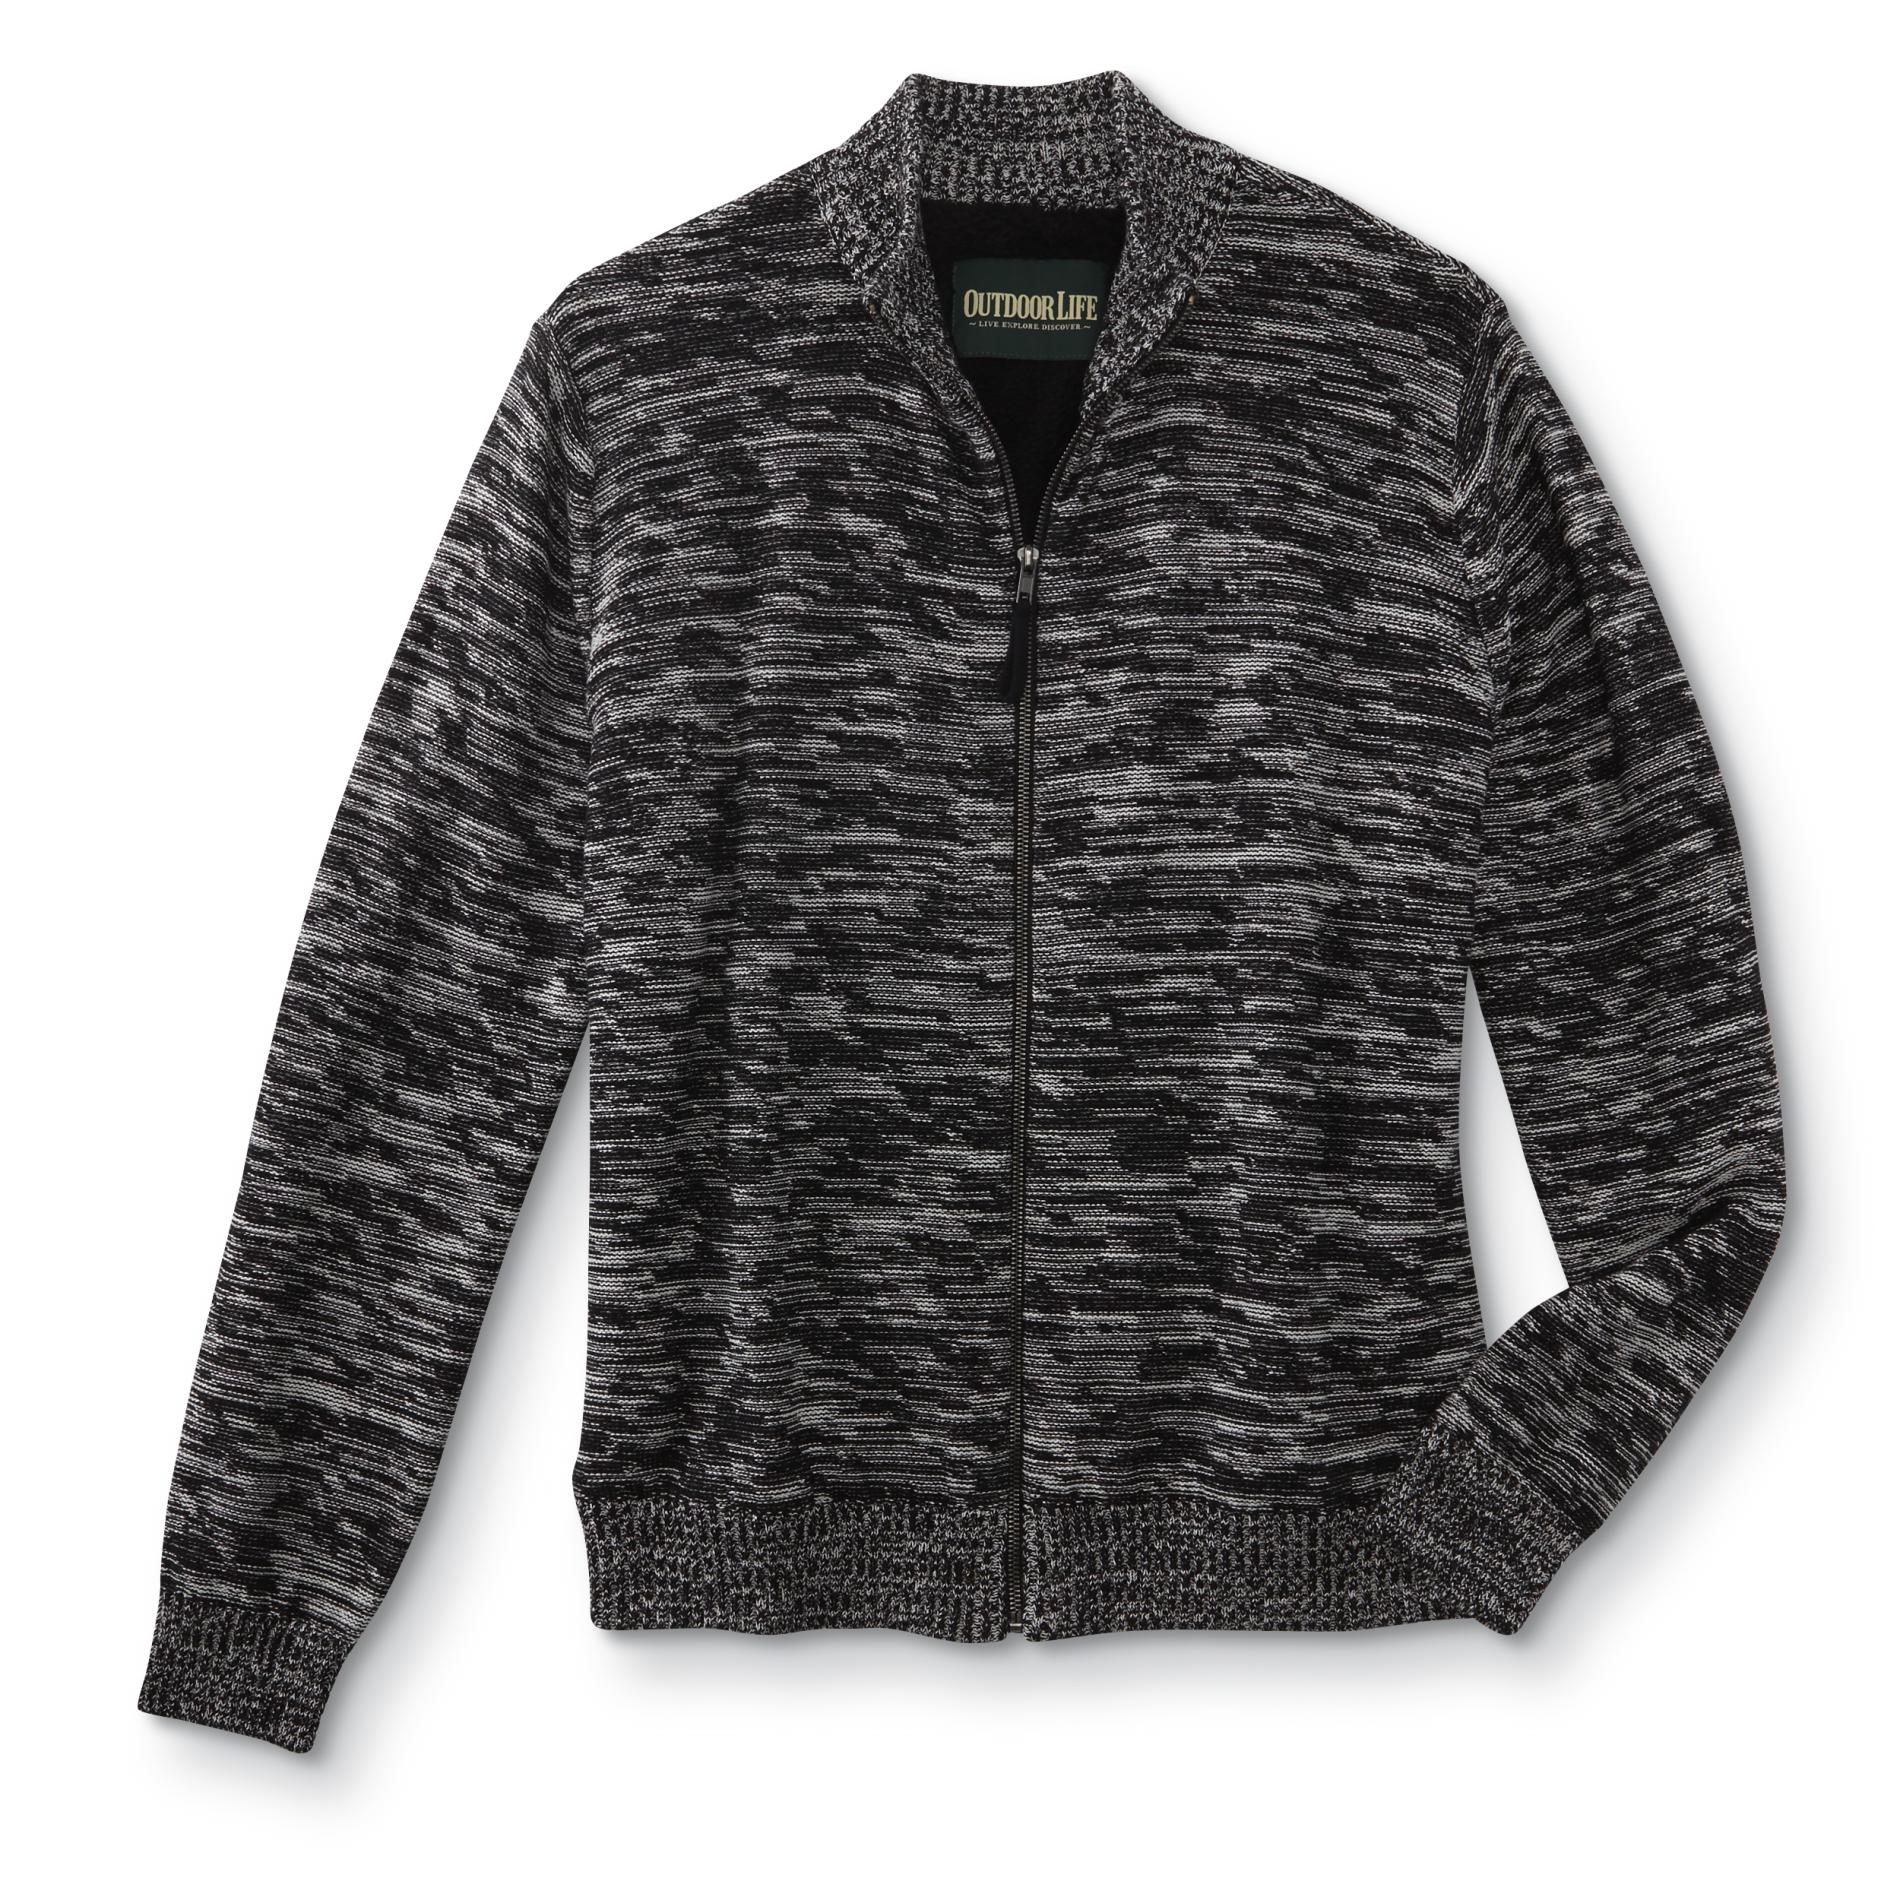 Men's Sweater Jacket - Marled